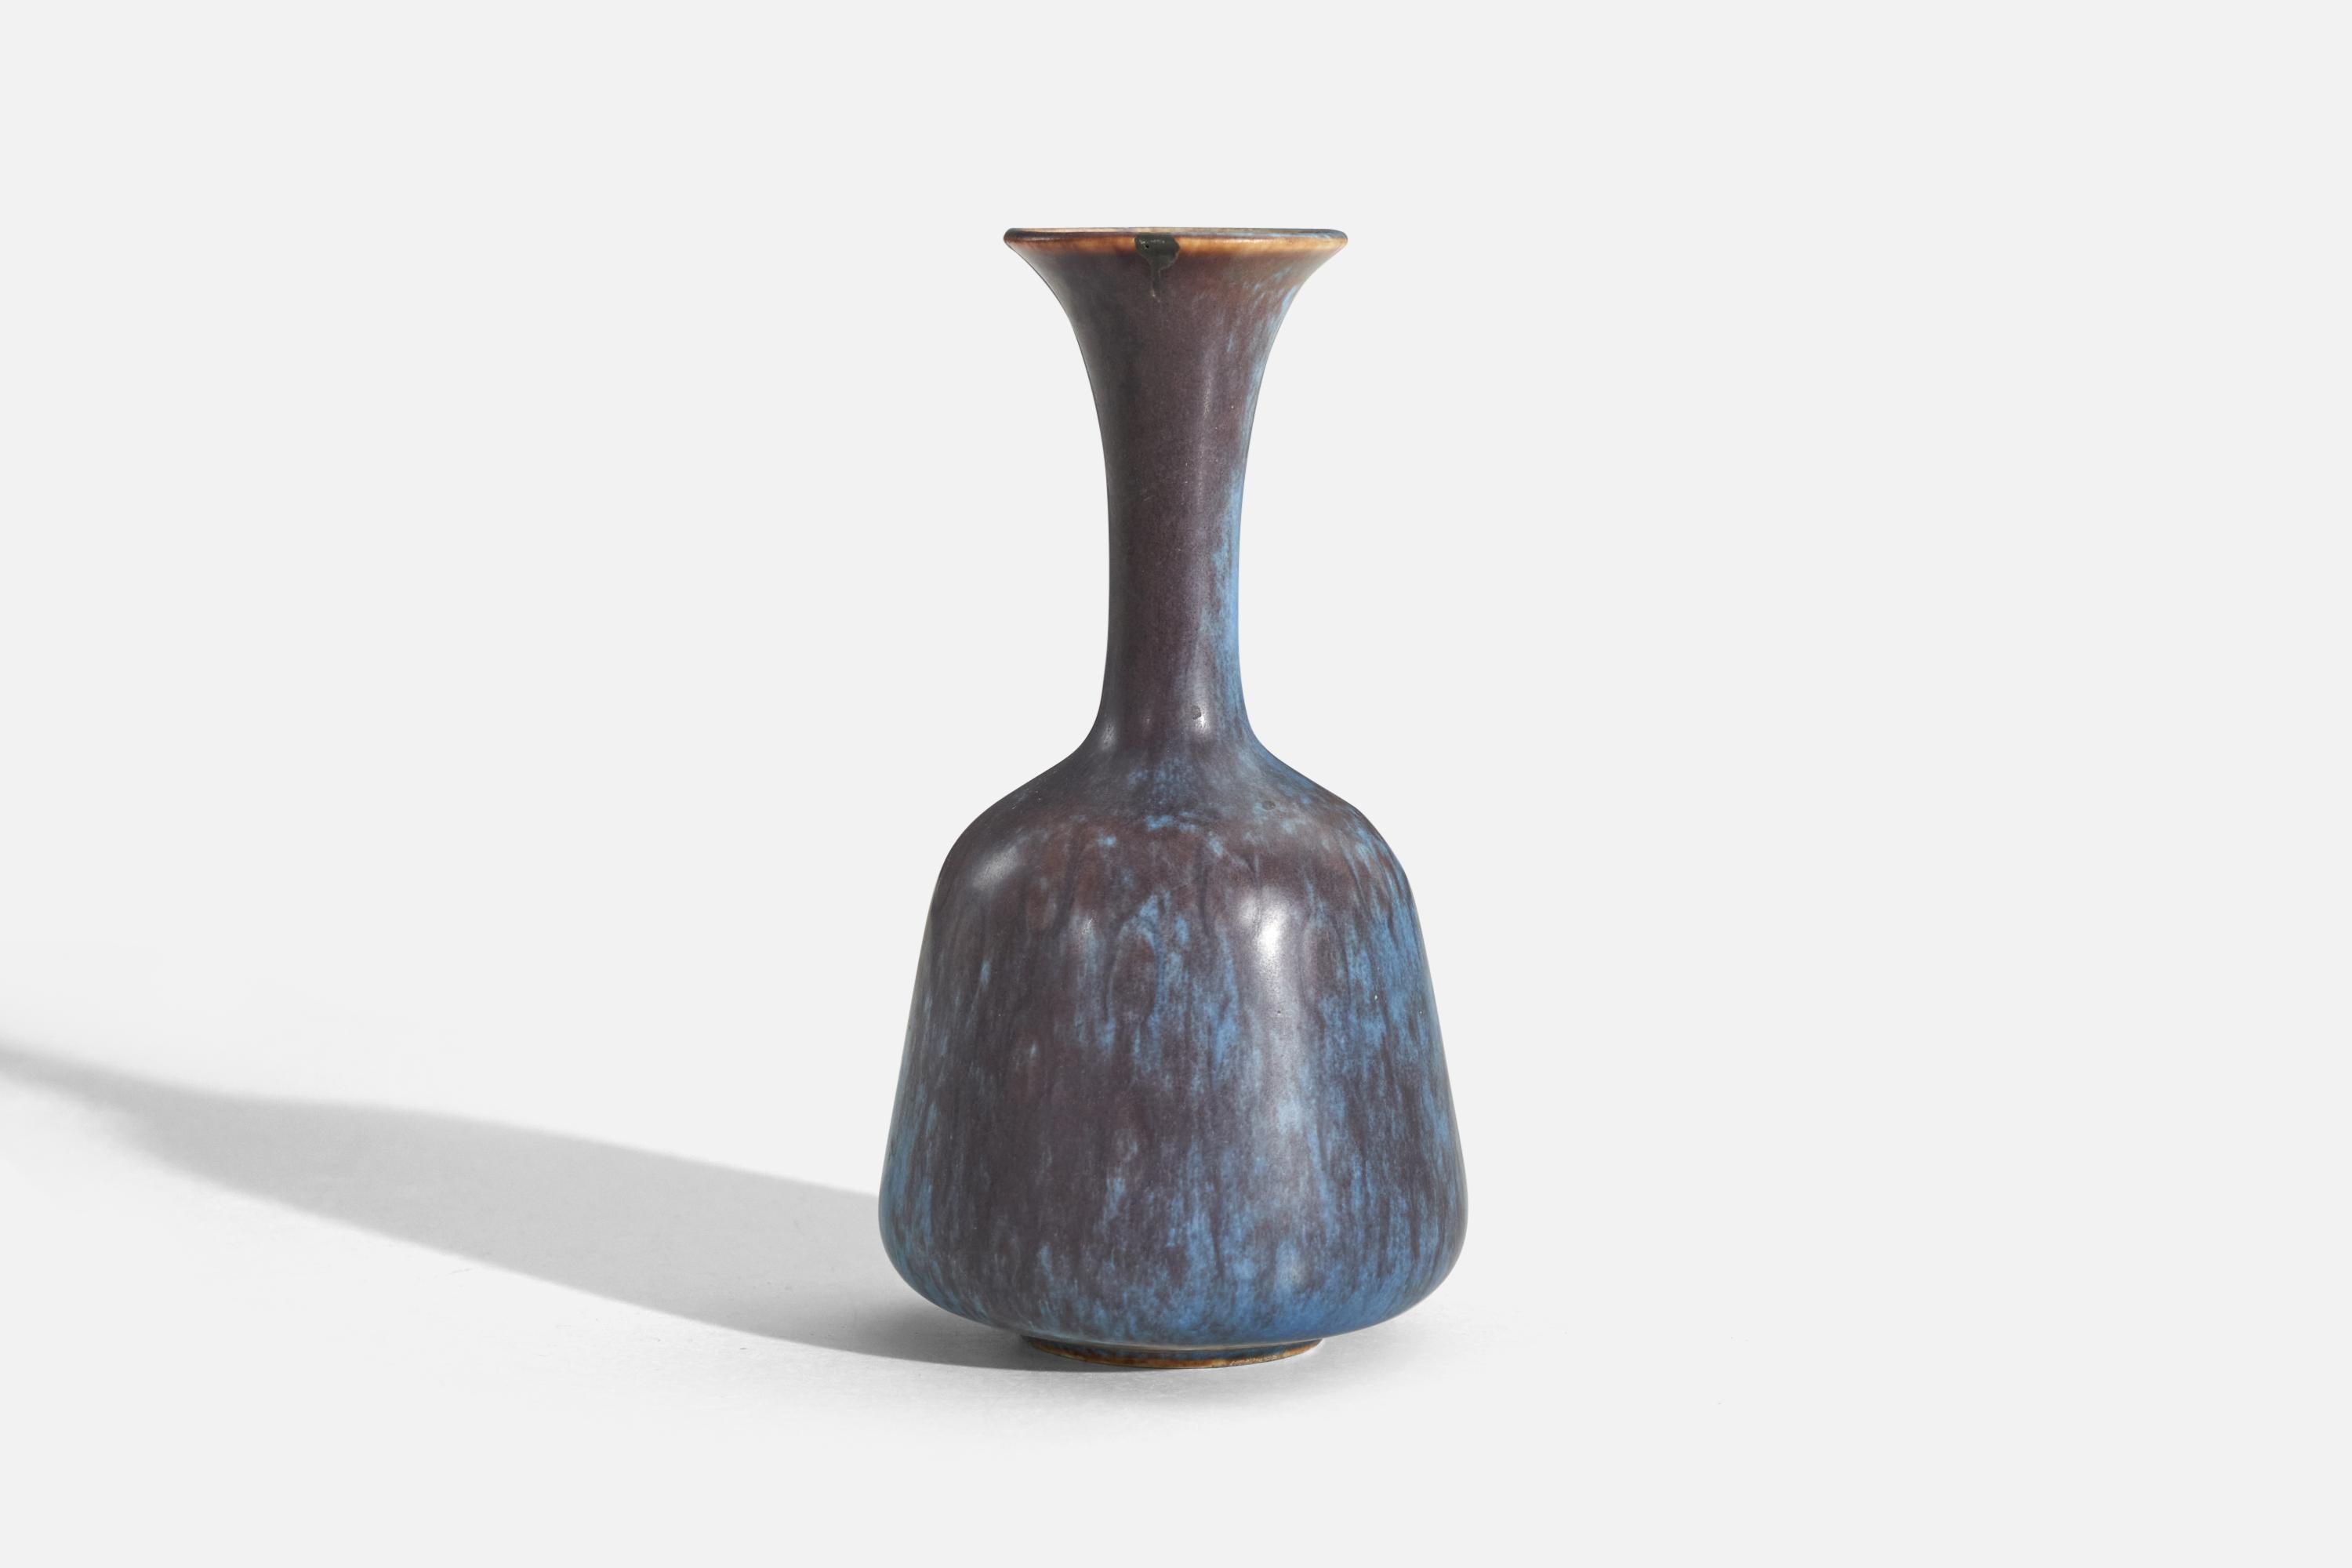 European Gunnar Nylund, Vase, Blue and Brown-Glazed Stoneware, Rörstand, Sweden, 1950s For Sale